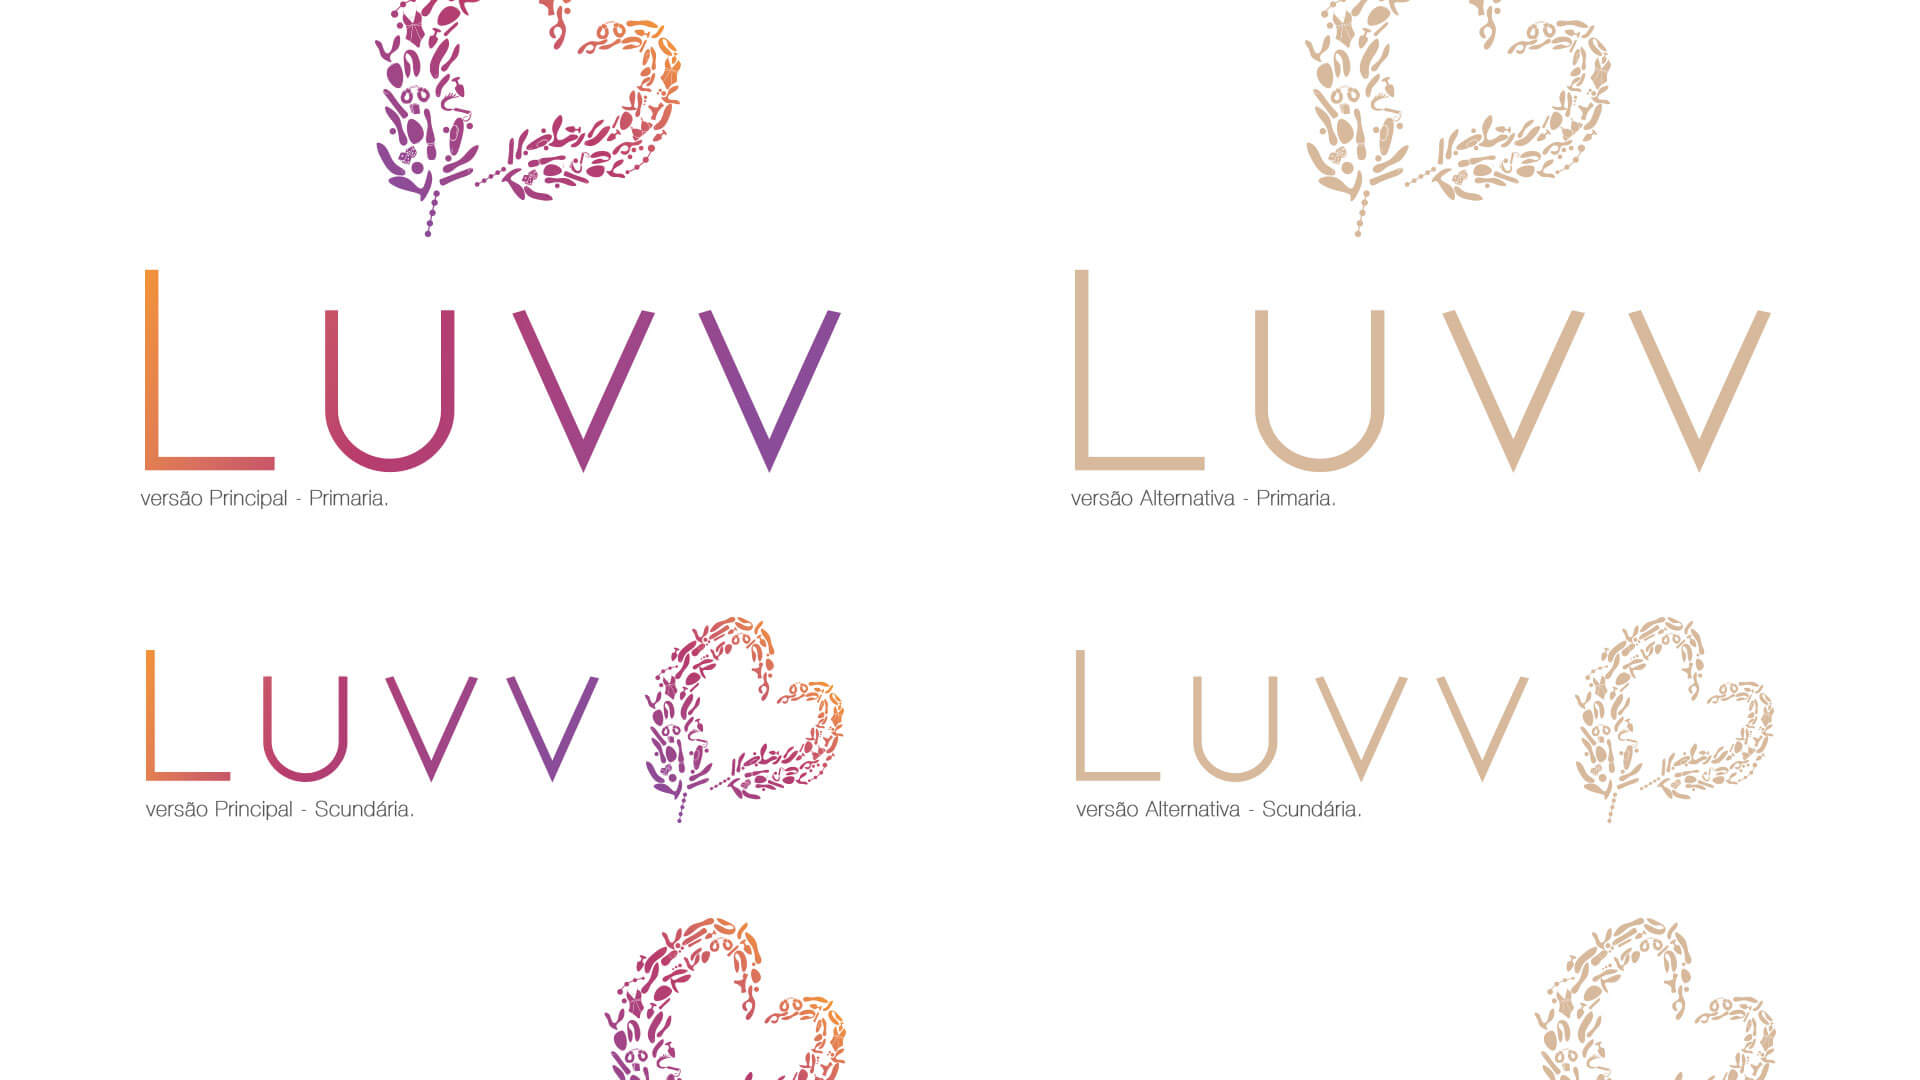 Luvv-Apresentação-marca-logo-id-idvisual-2021_12